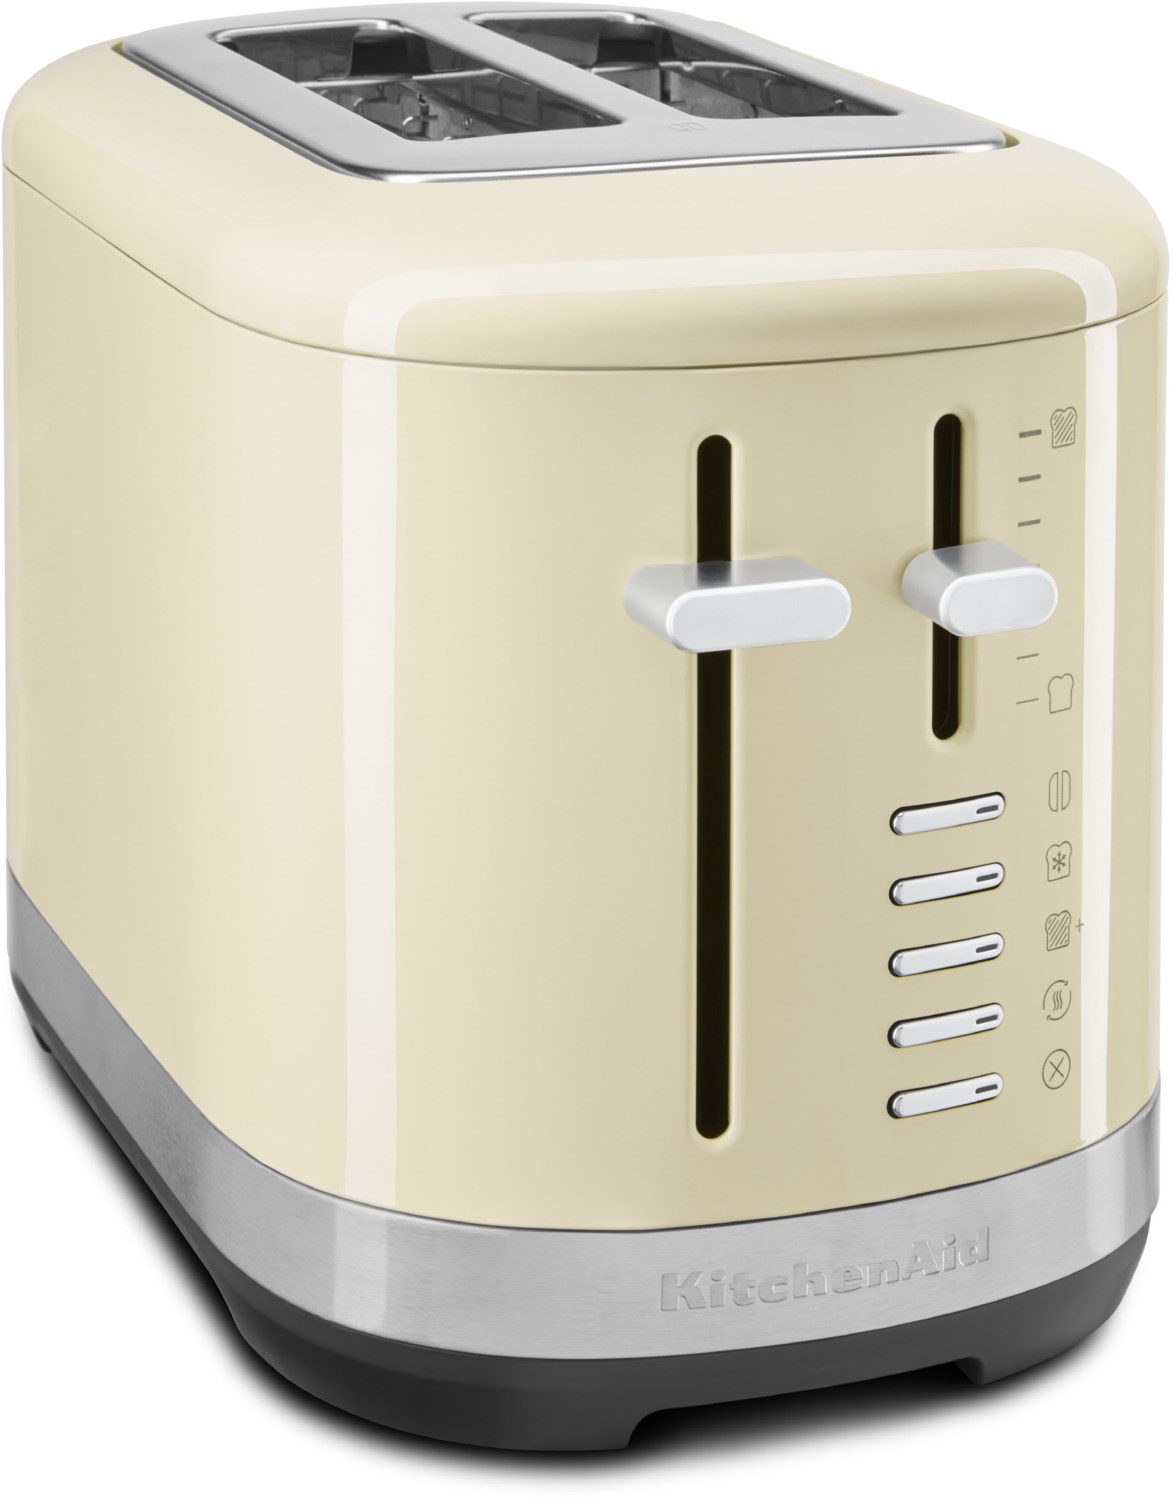 5KMT2109EAC Kompakt-Toaster creme